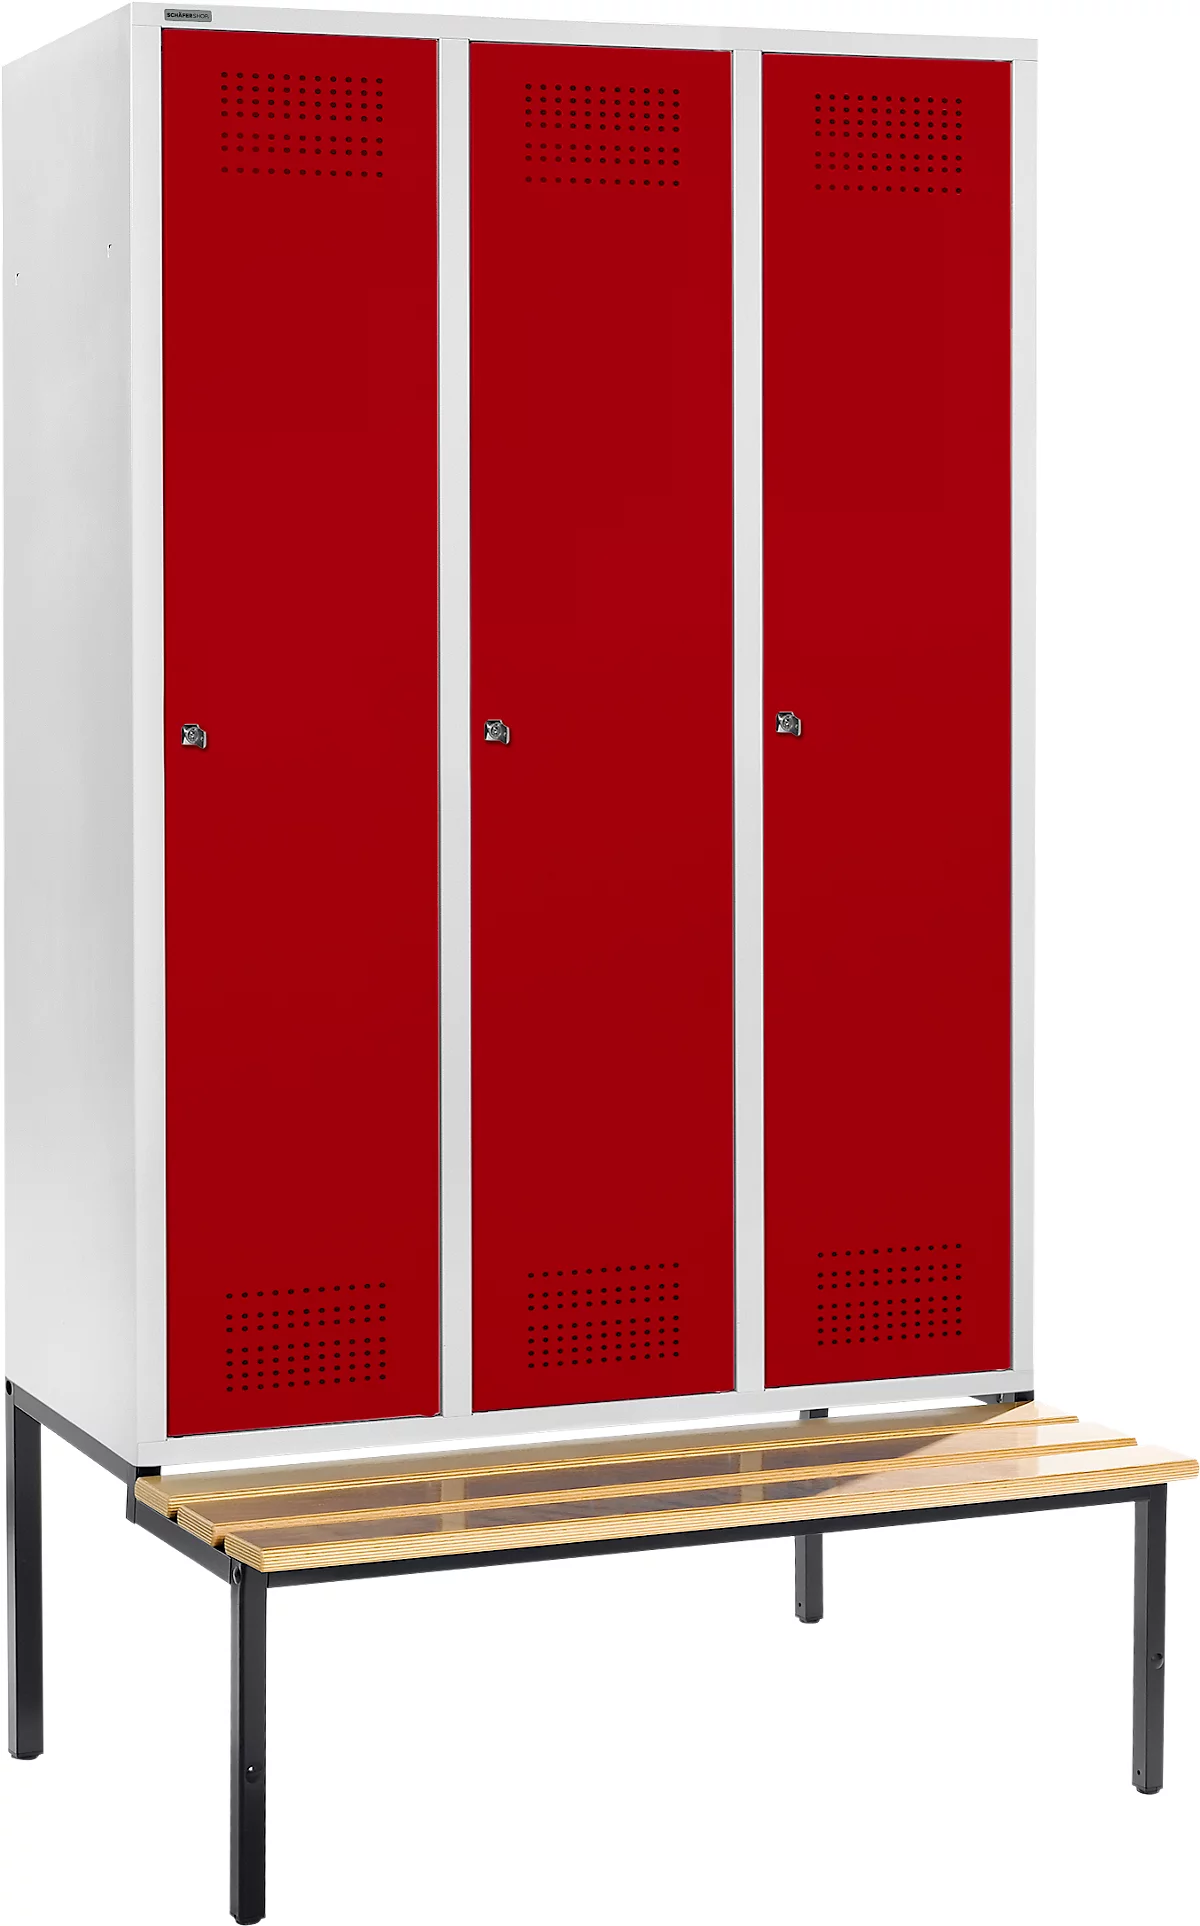 Schäfer Shop Genius Taquilla con banco, 3 compartimentos, anchura compartimento 400 mm, cerradura de cilindro, gris luminoso/rojo rubí